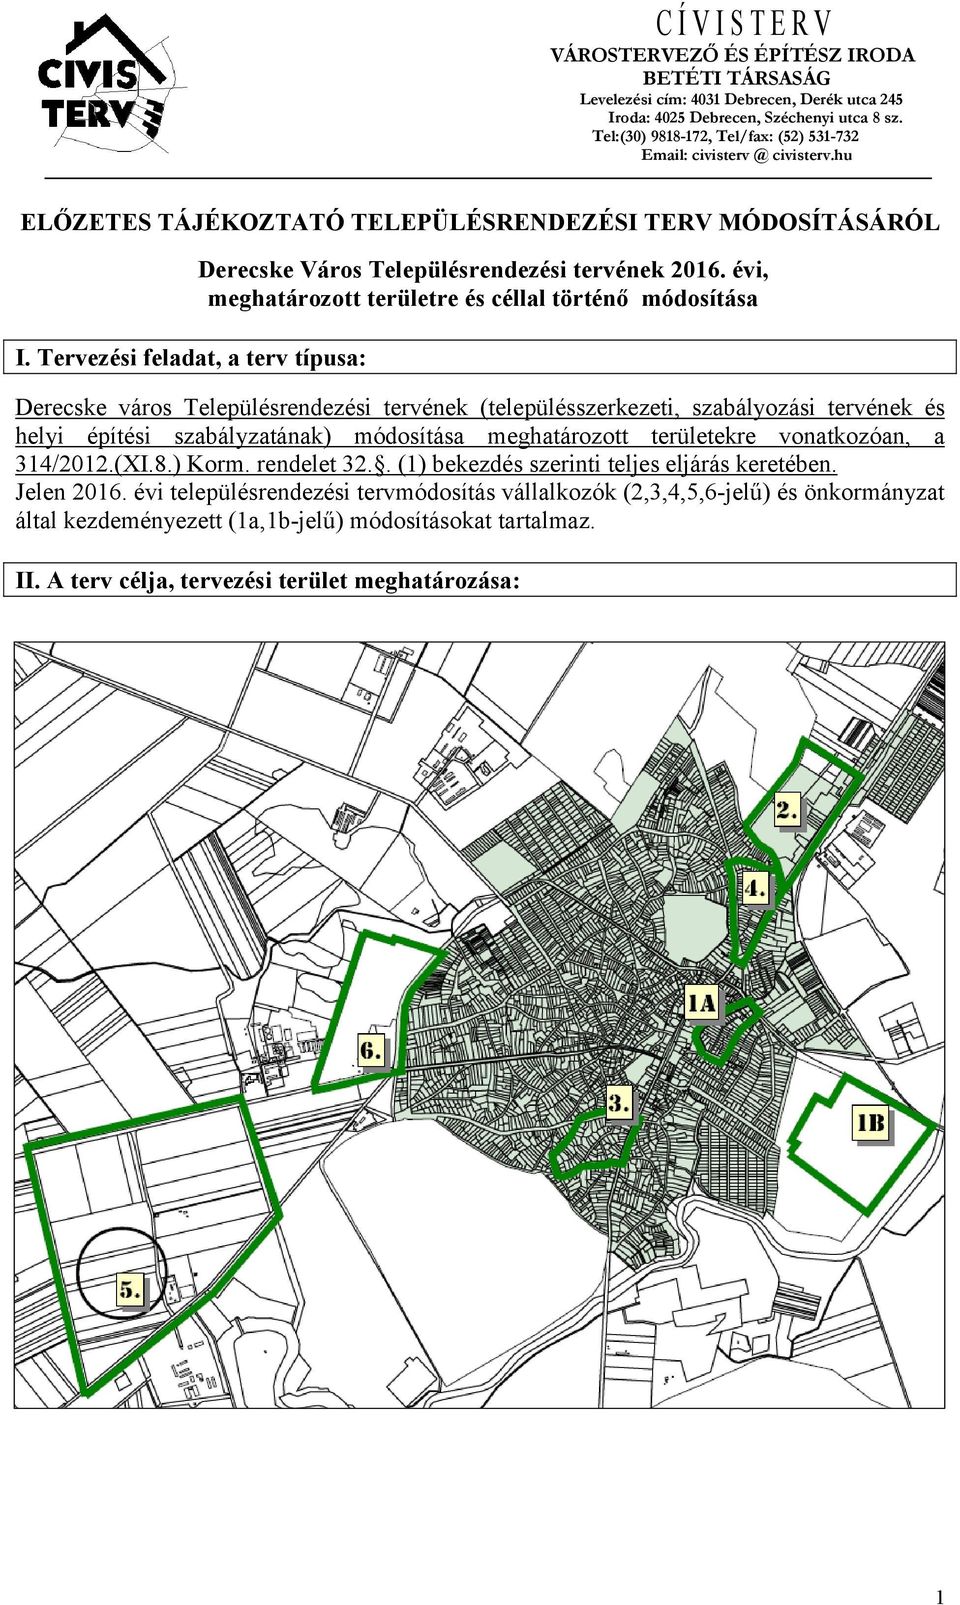 Tervezési feladat, a terv típusa: Derecske Város Településrendezési tervének 2016.